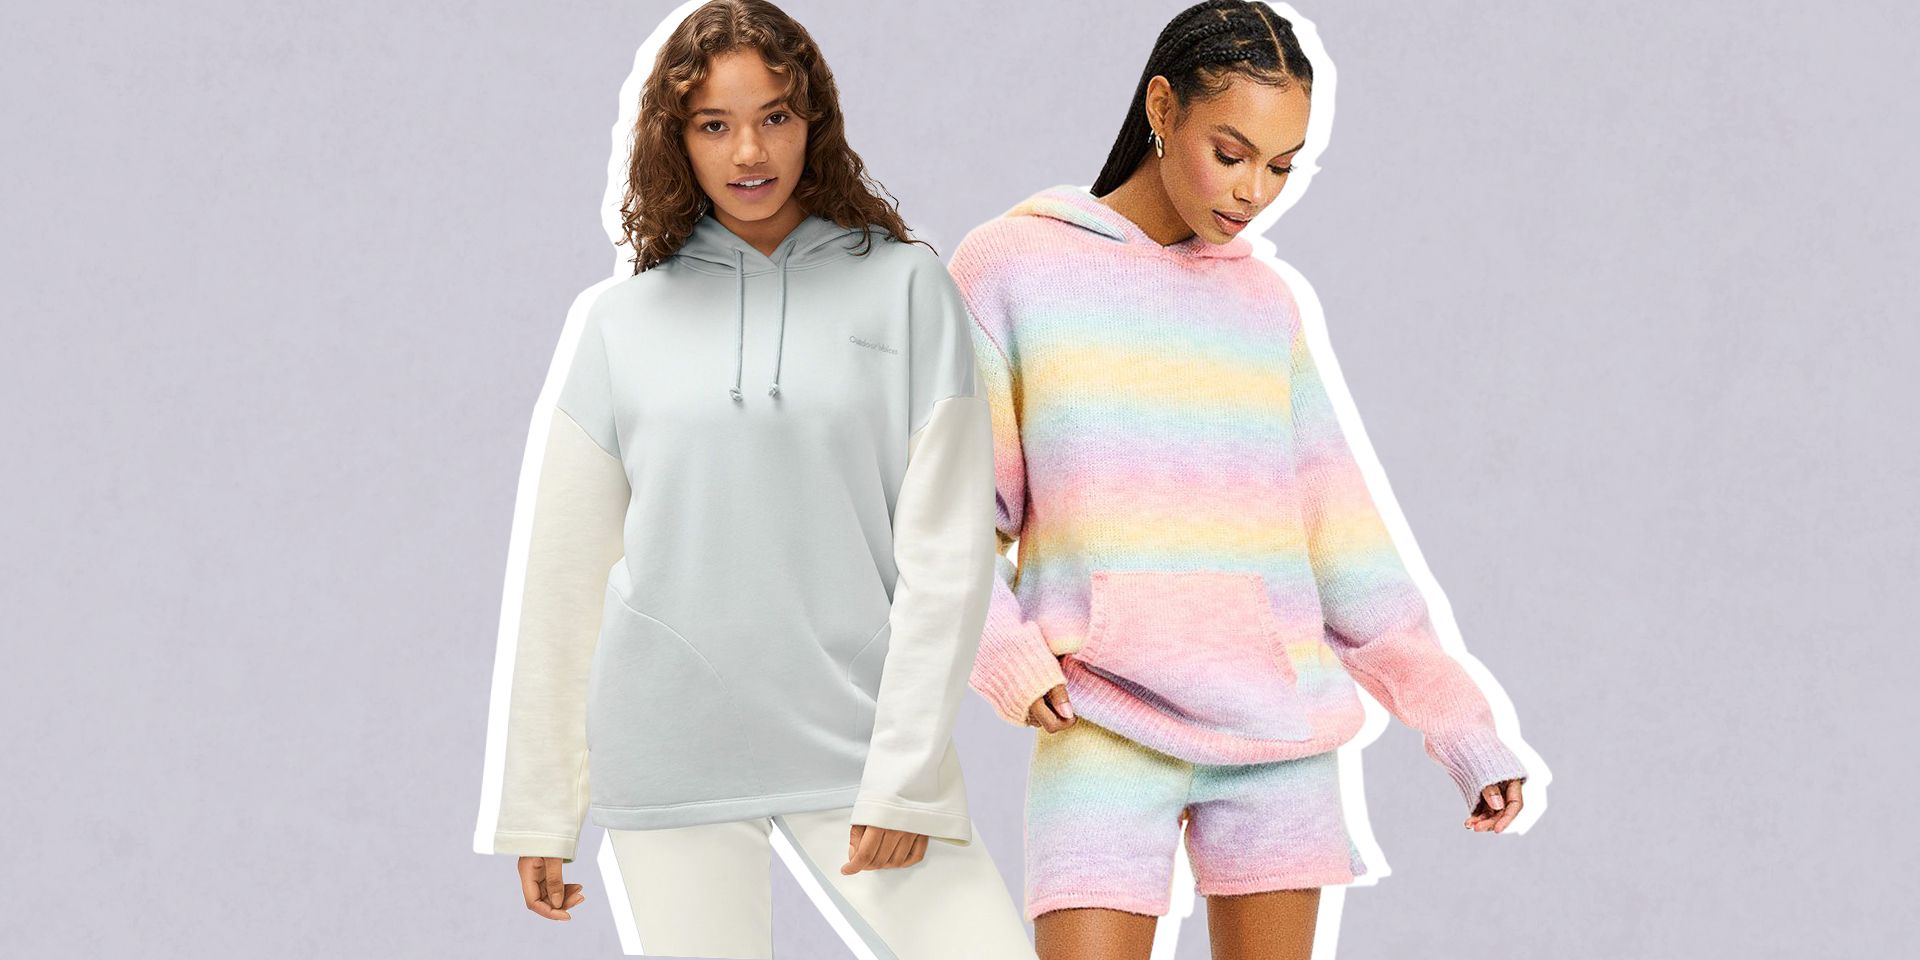 16 Best Women's Sweatshirts to Shop Now — Top Hoodies and